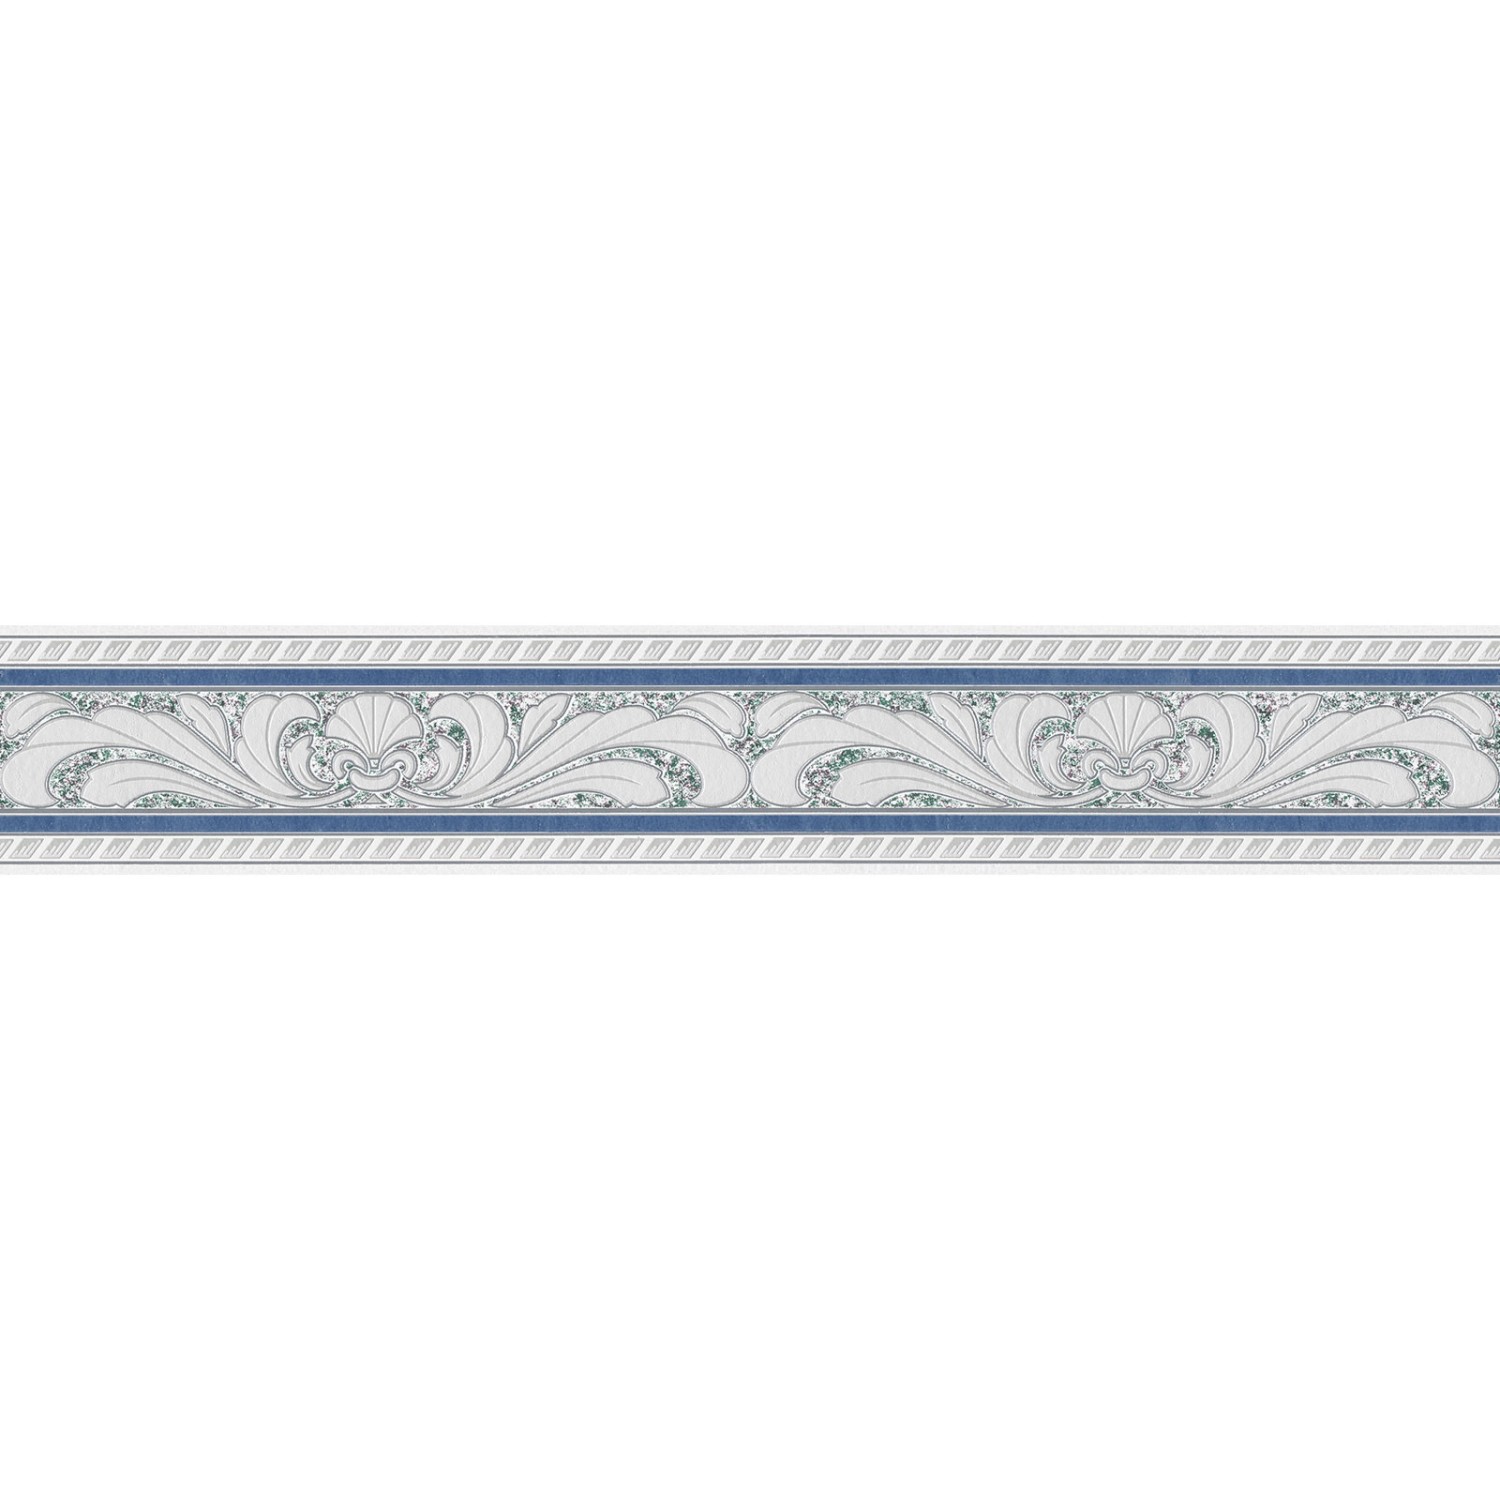 Bricoflor Barock Tapeten Bordüre in Grau und Blau Badezimmer und Küchen Bordüre mit Ornament Papier Tapetenborte mit Vin